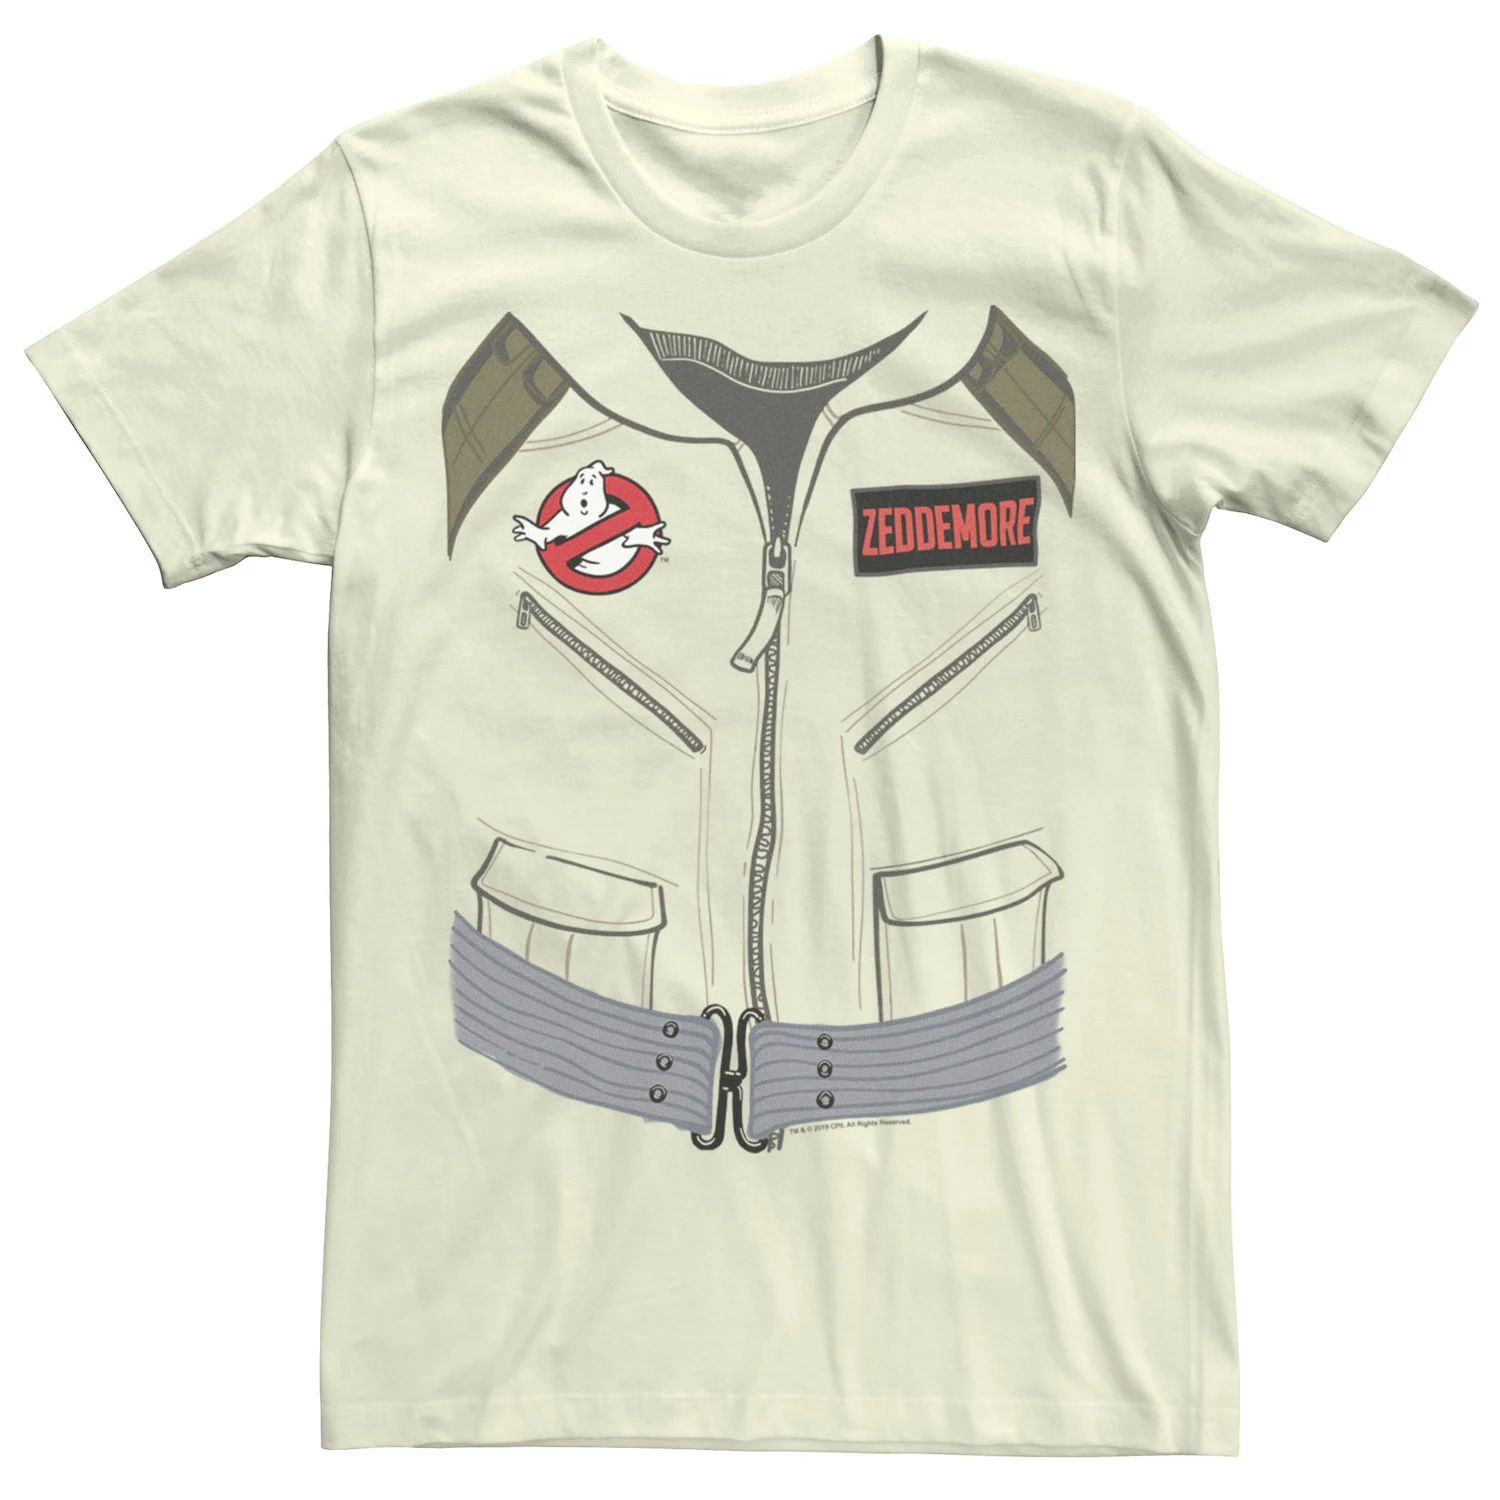 Мужская костюмная футболка «Охотники за привидениями» Zeddemore Licensed Character